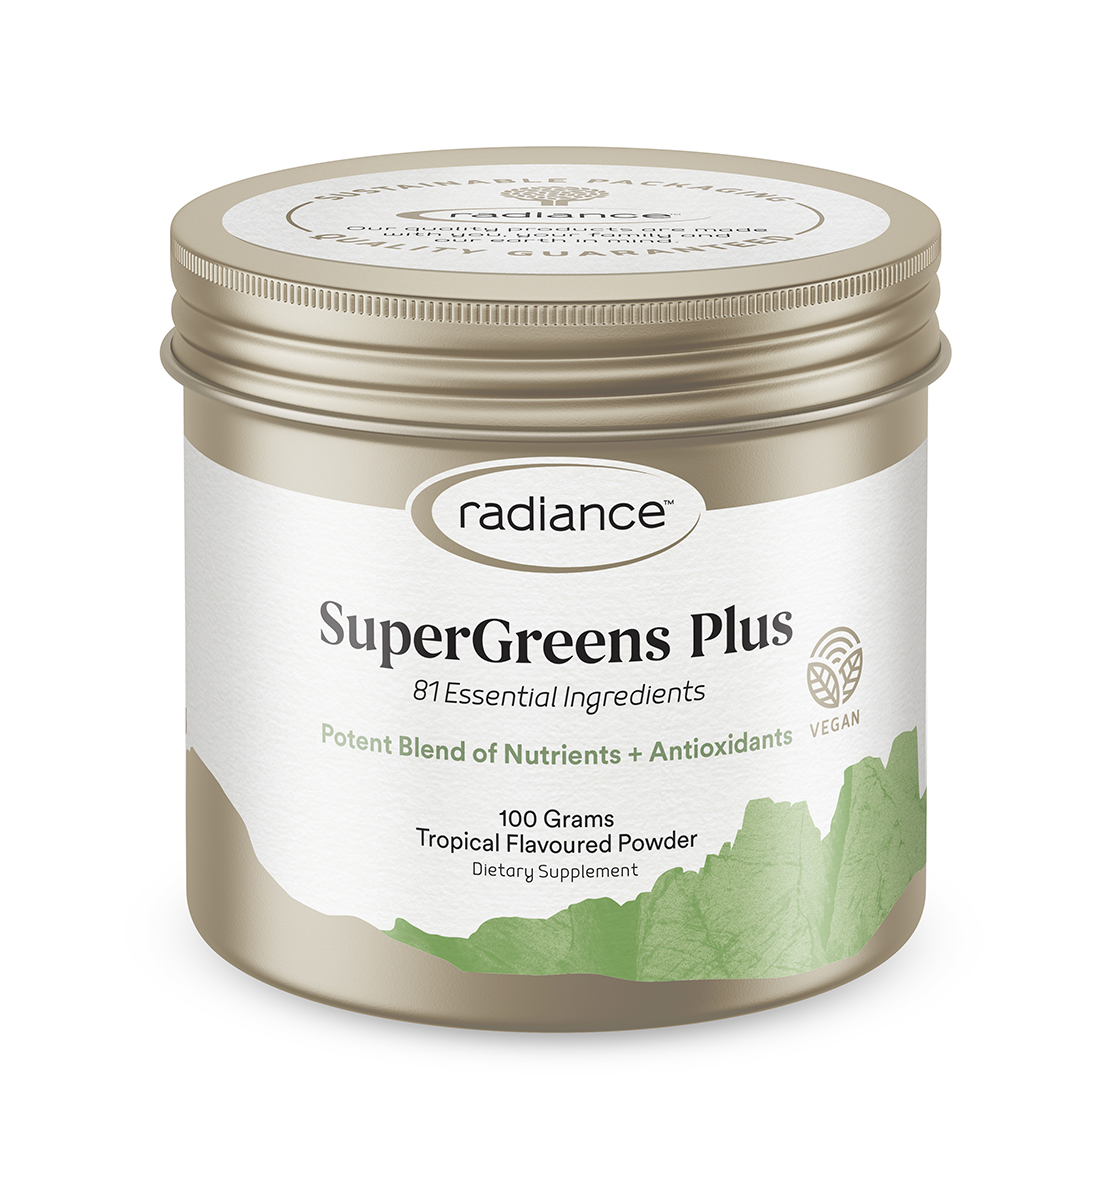 Radiance Super Greens + Powder 100g